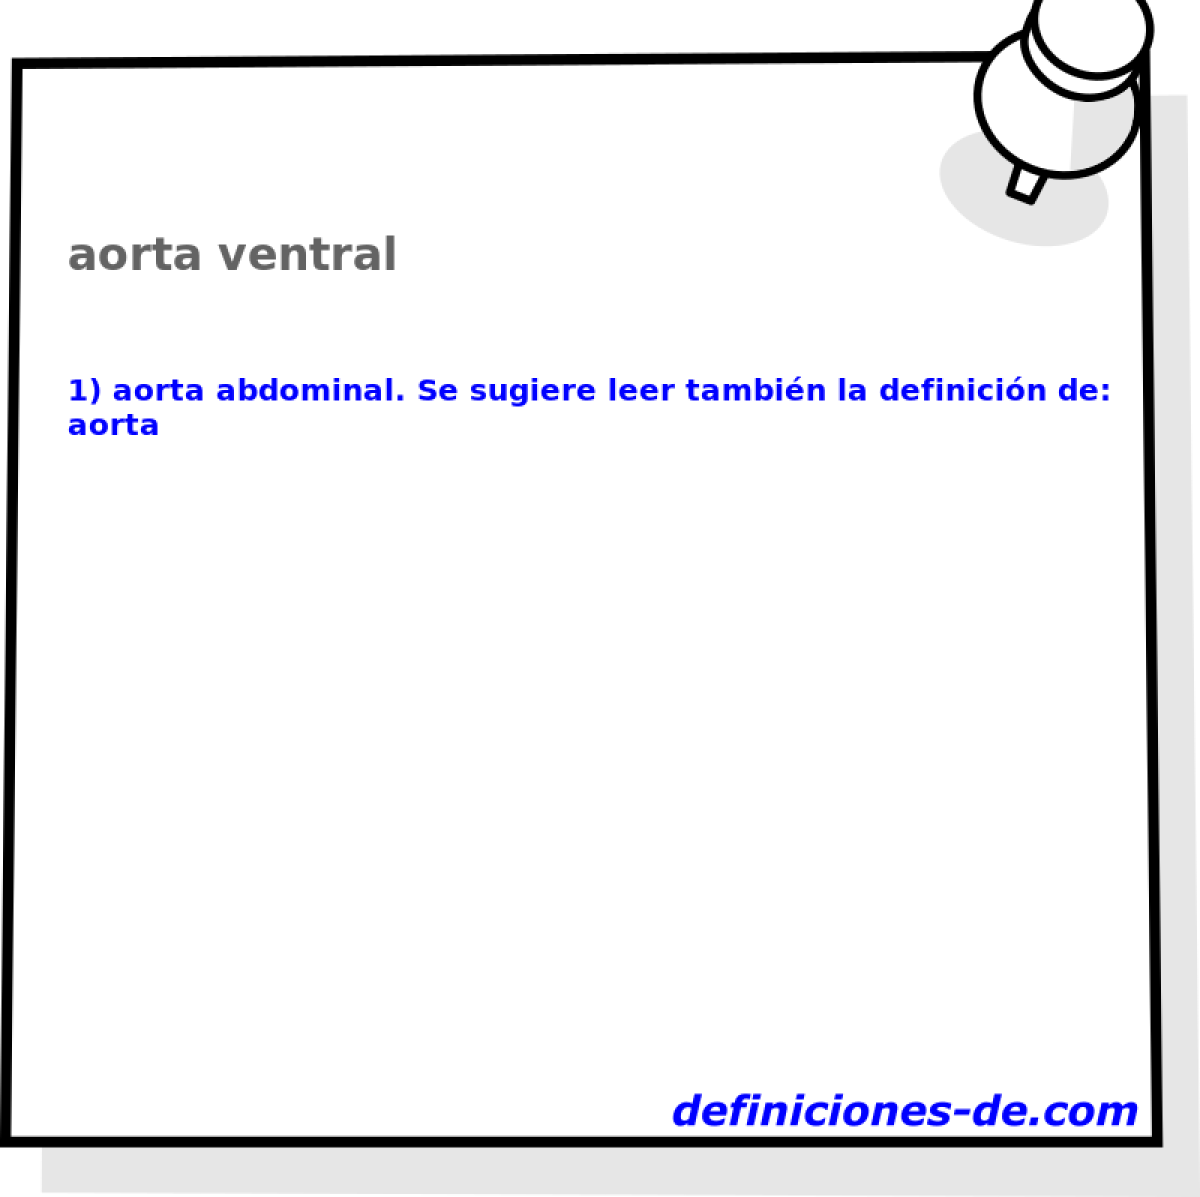 aorta ventral 